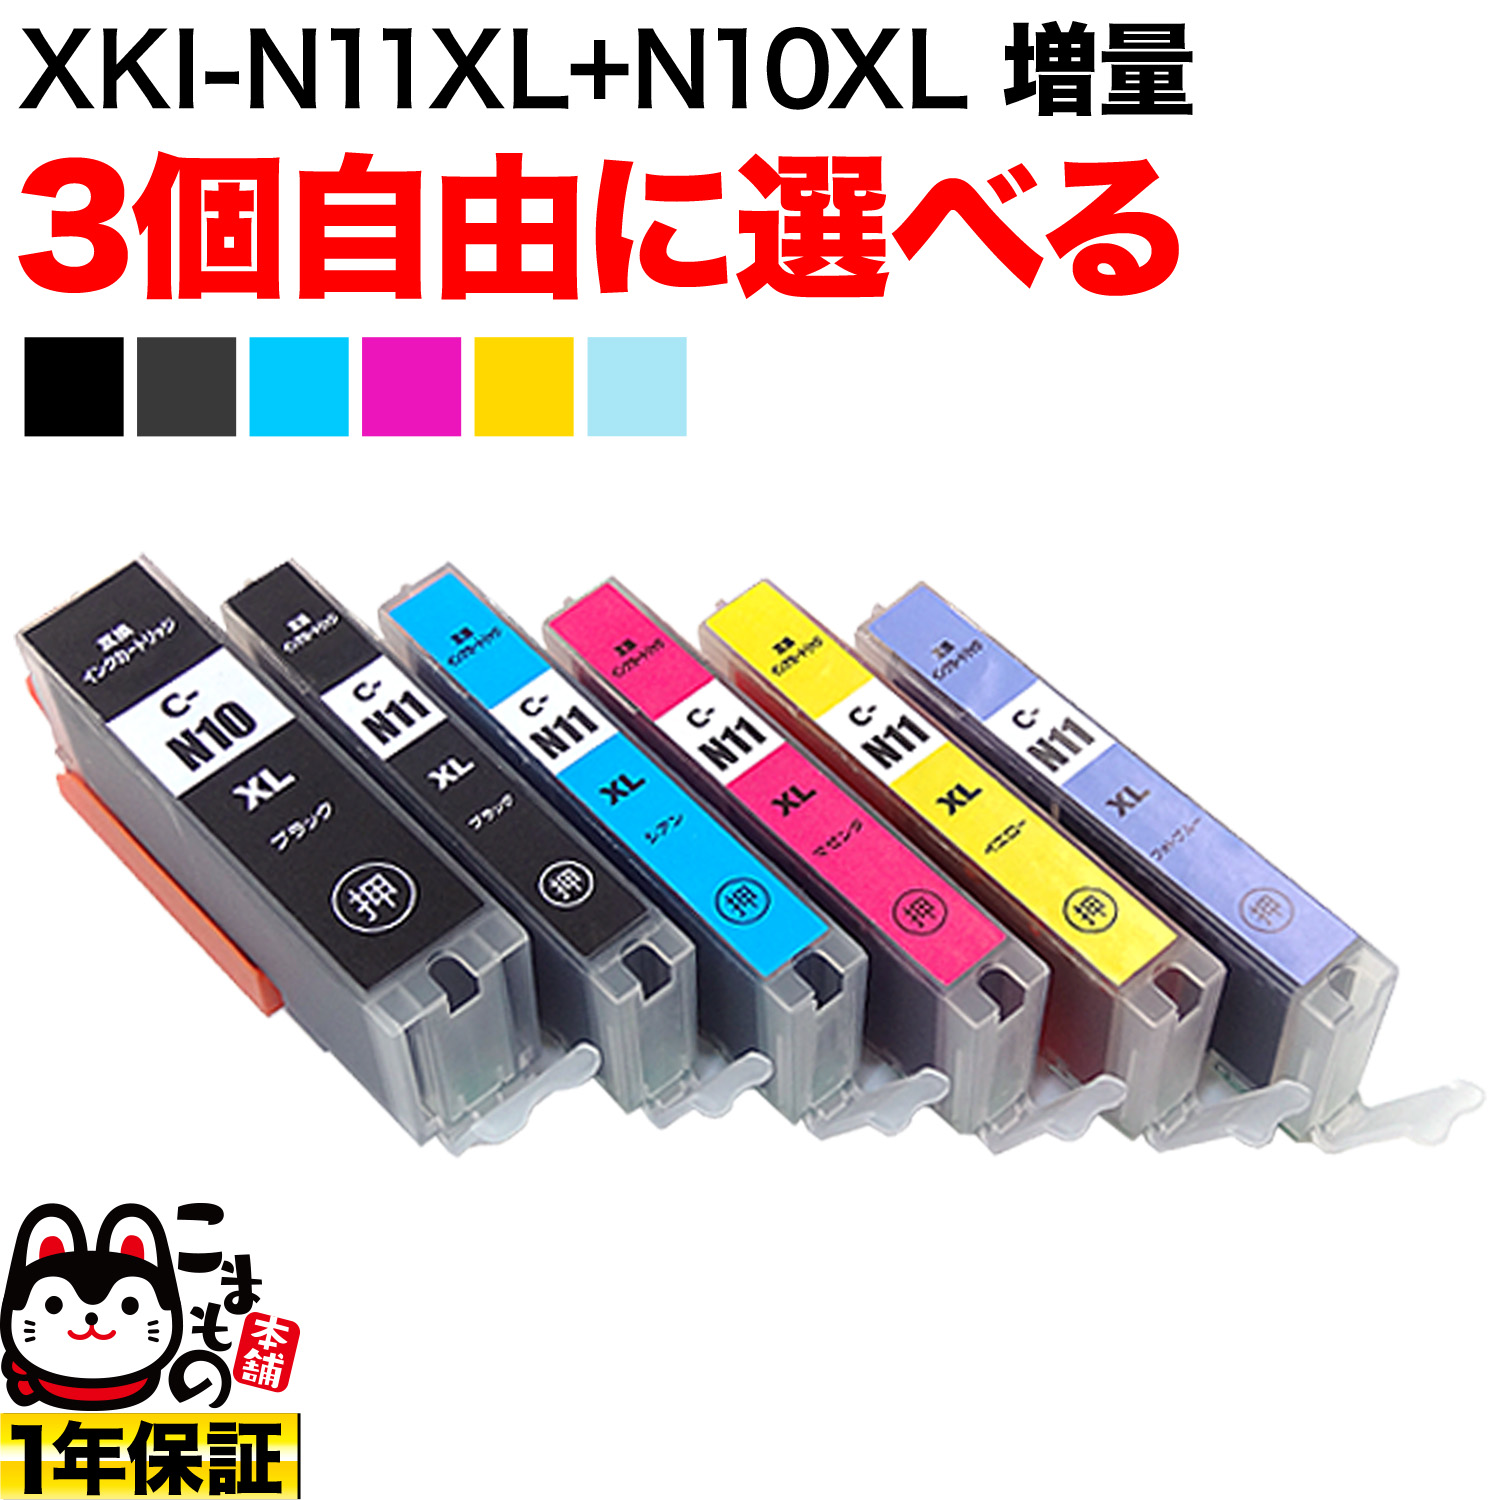 キヤノン用 XKI-N11XL+N10XL互換インクカートリッジ 自由選択3個セット ...